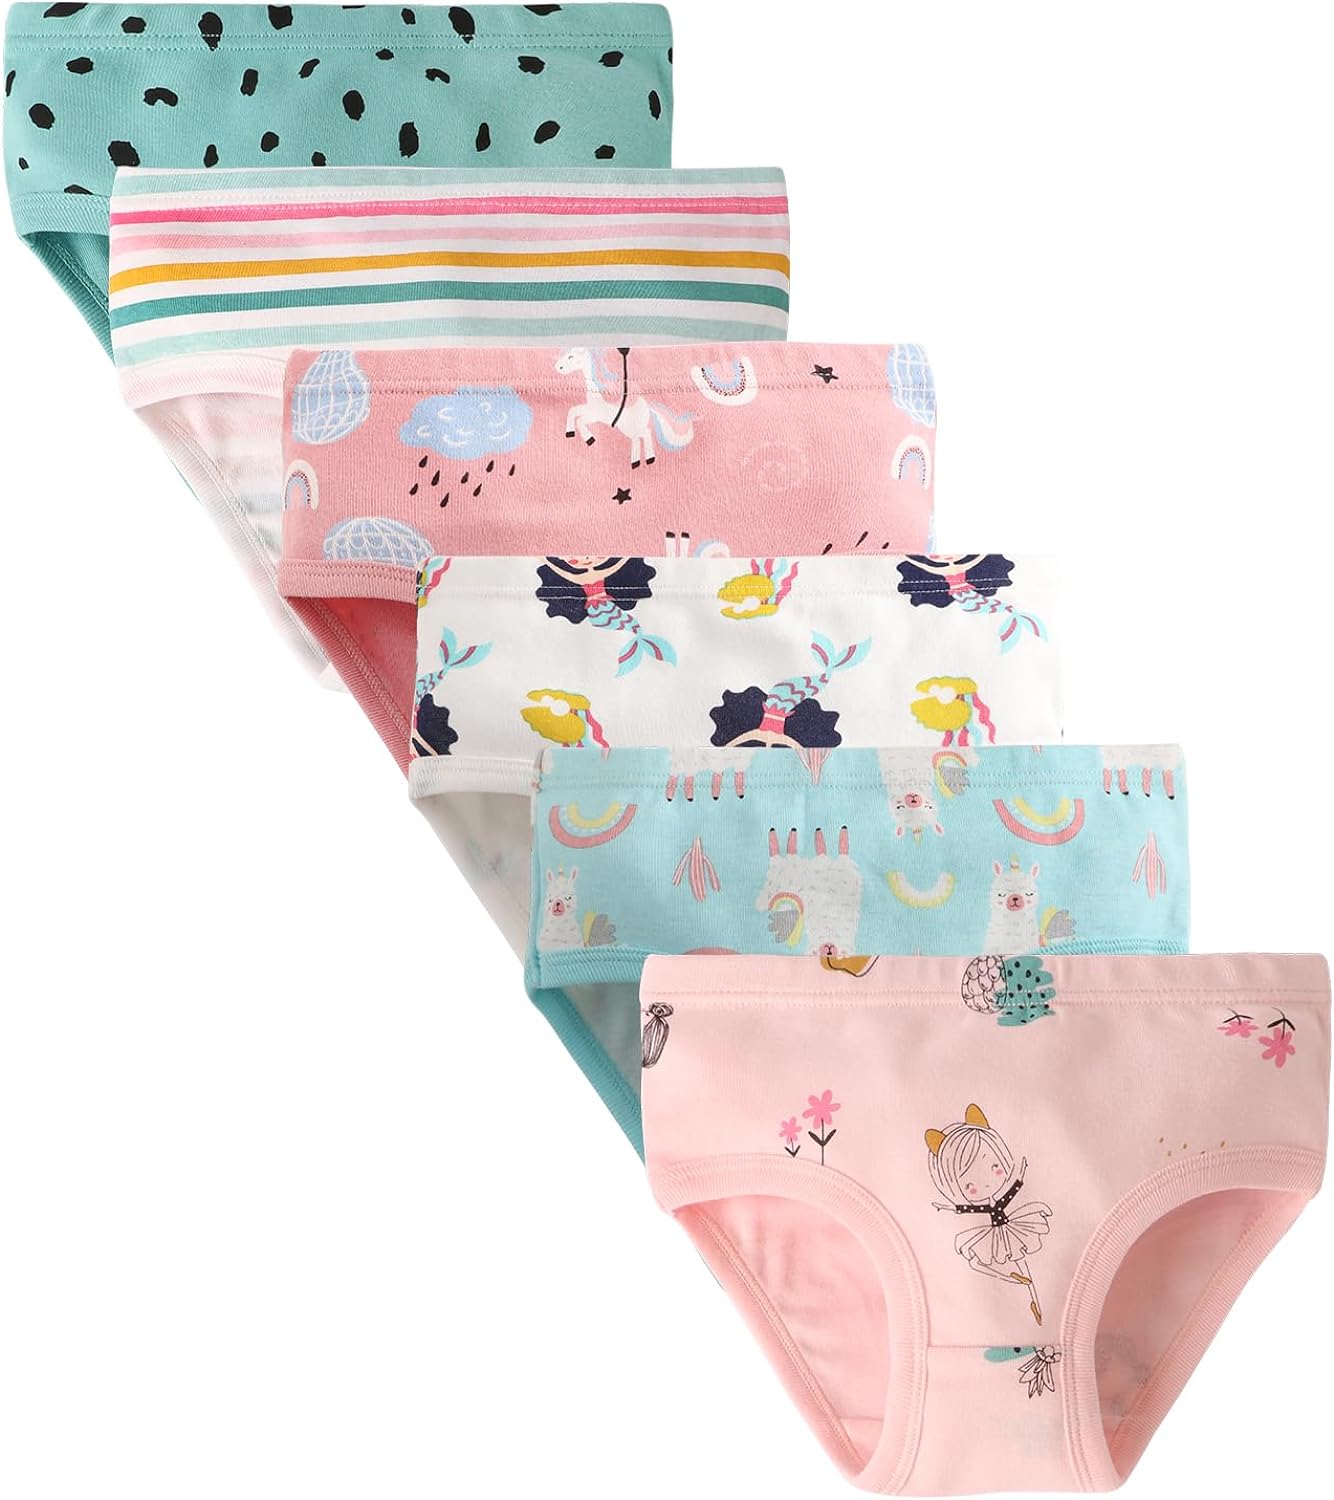 Buy Boboking Baby Soft Cotton Underwear Little Girls'Briefs Toddler Undies  Online at desertcartSeychelles